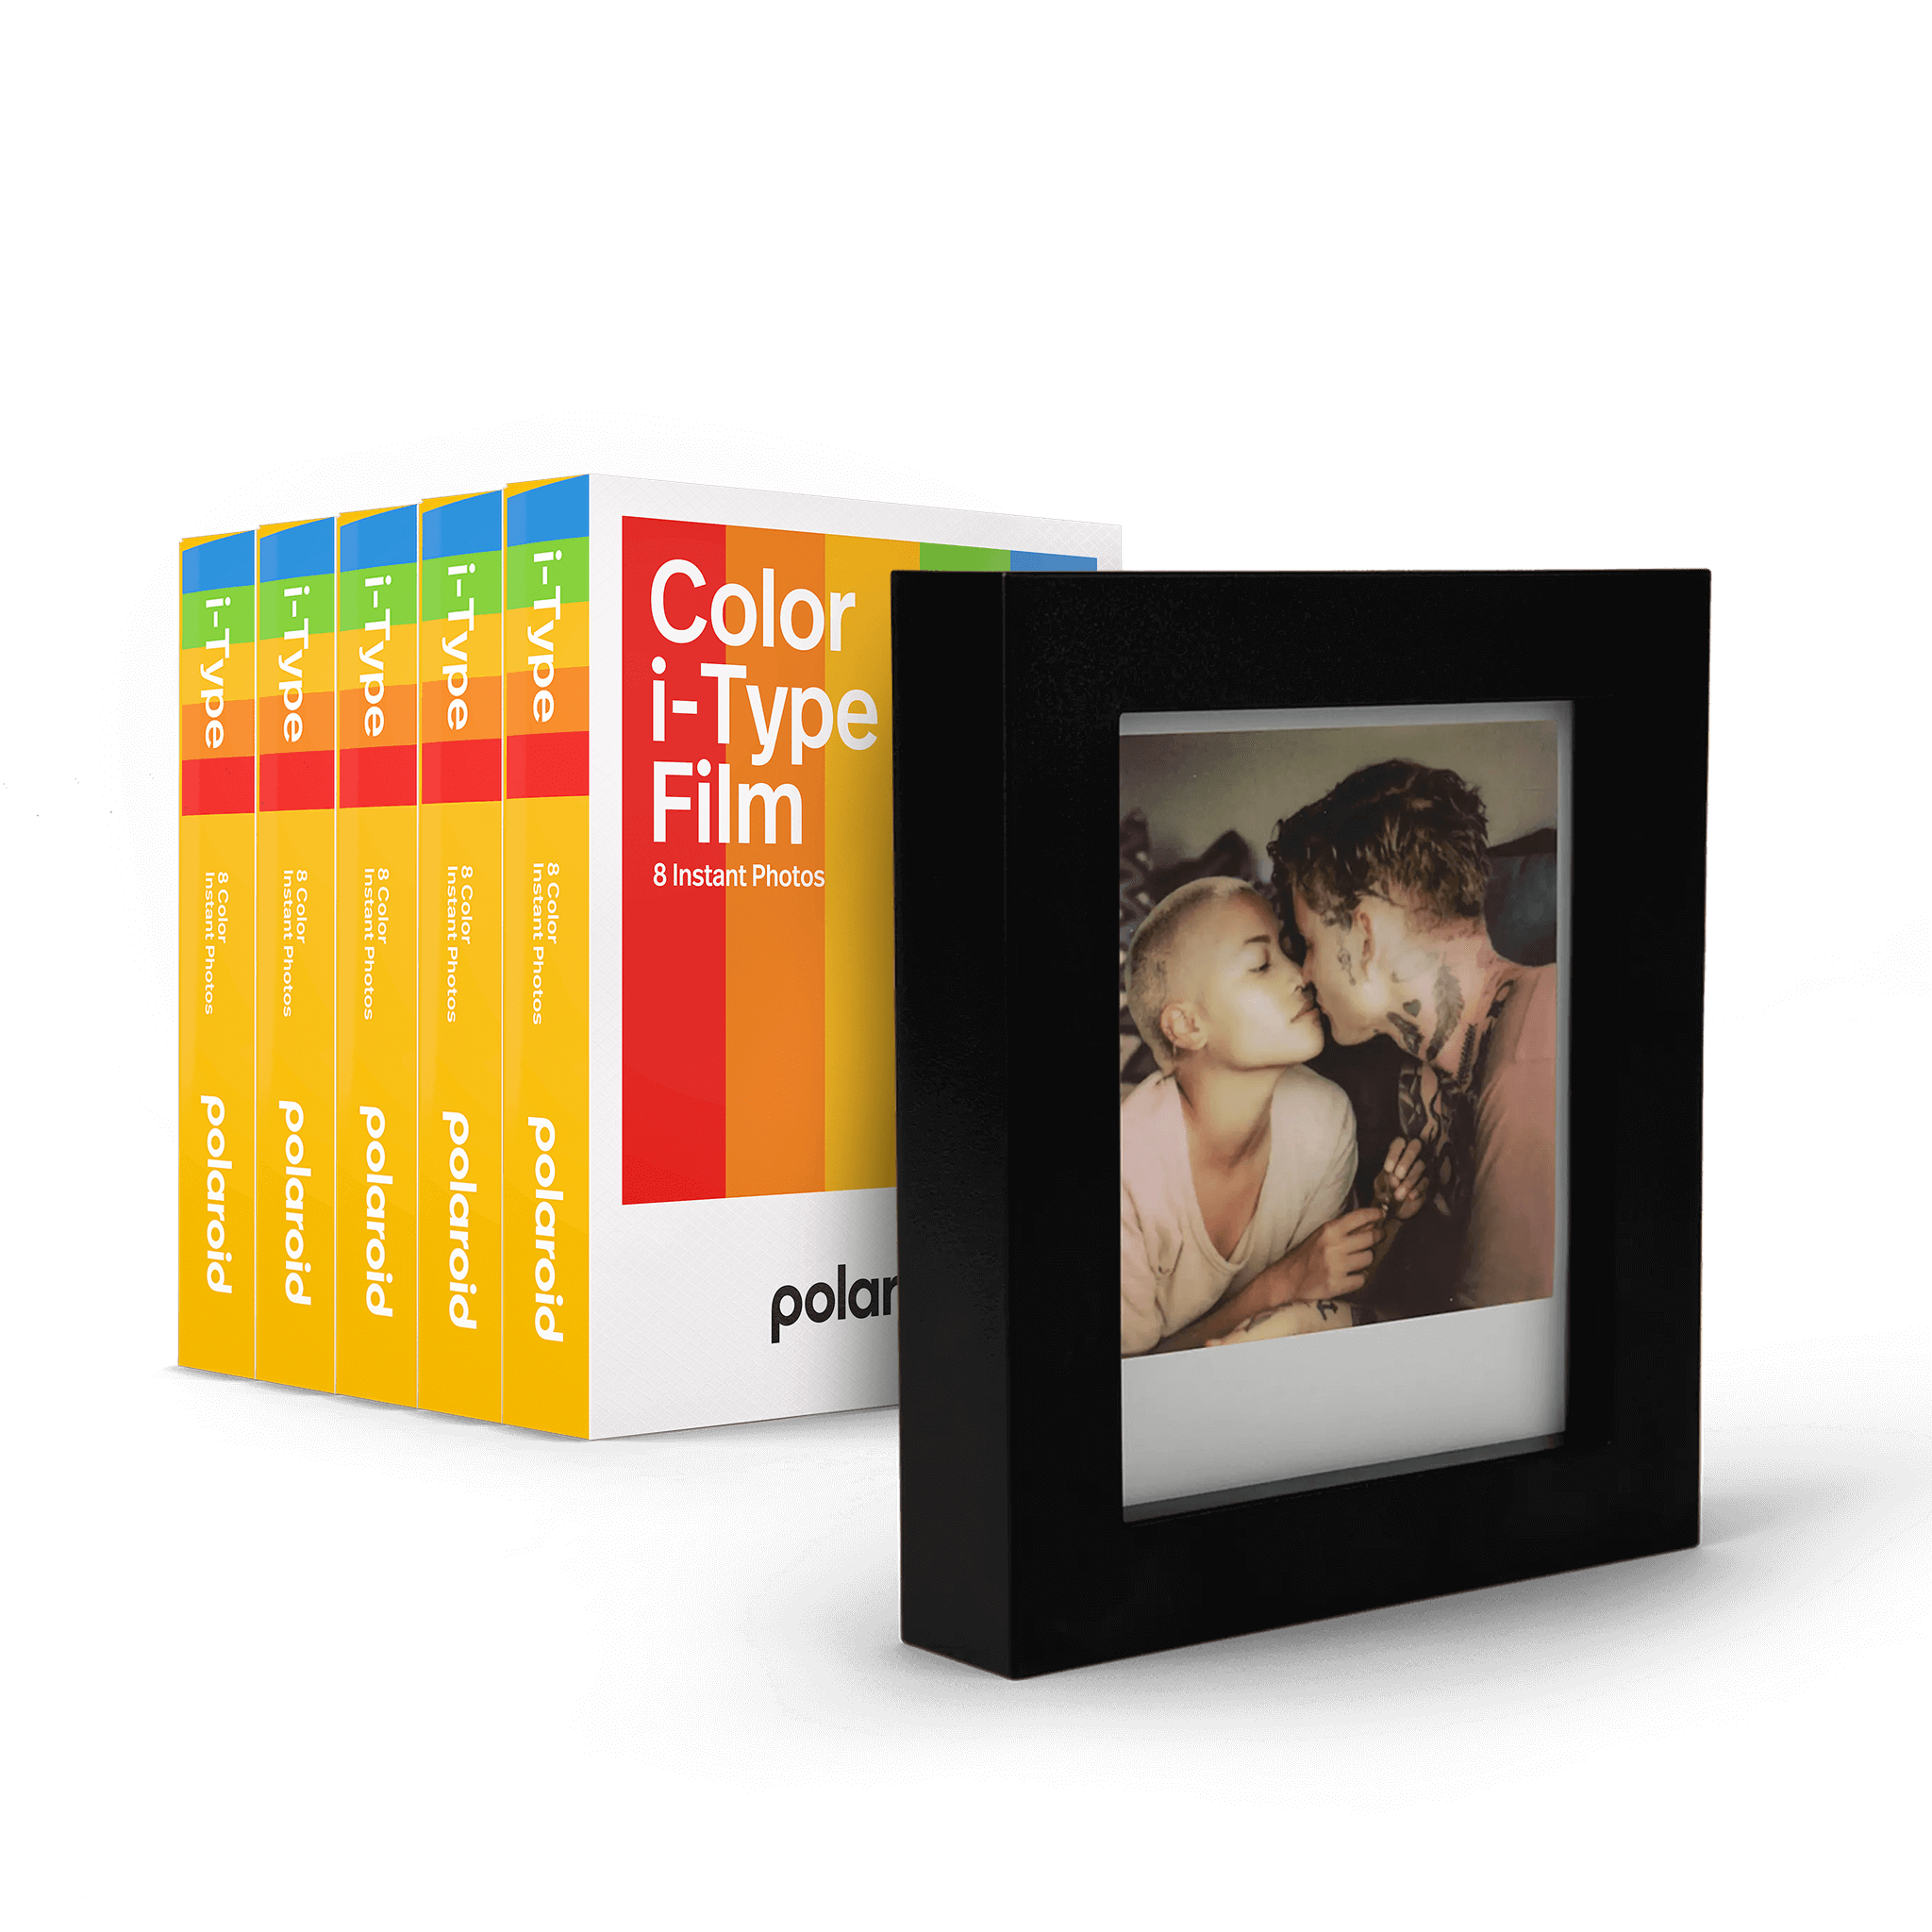 Polaroid film couleur i-type - spectrum edition POLAROID Pas Cher